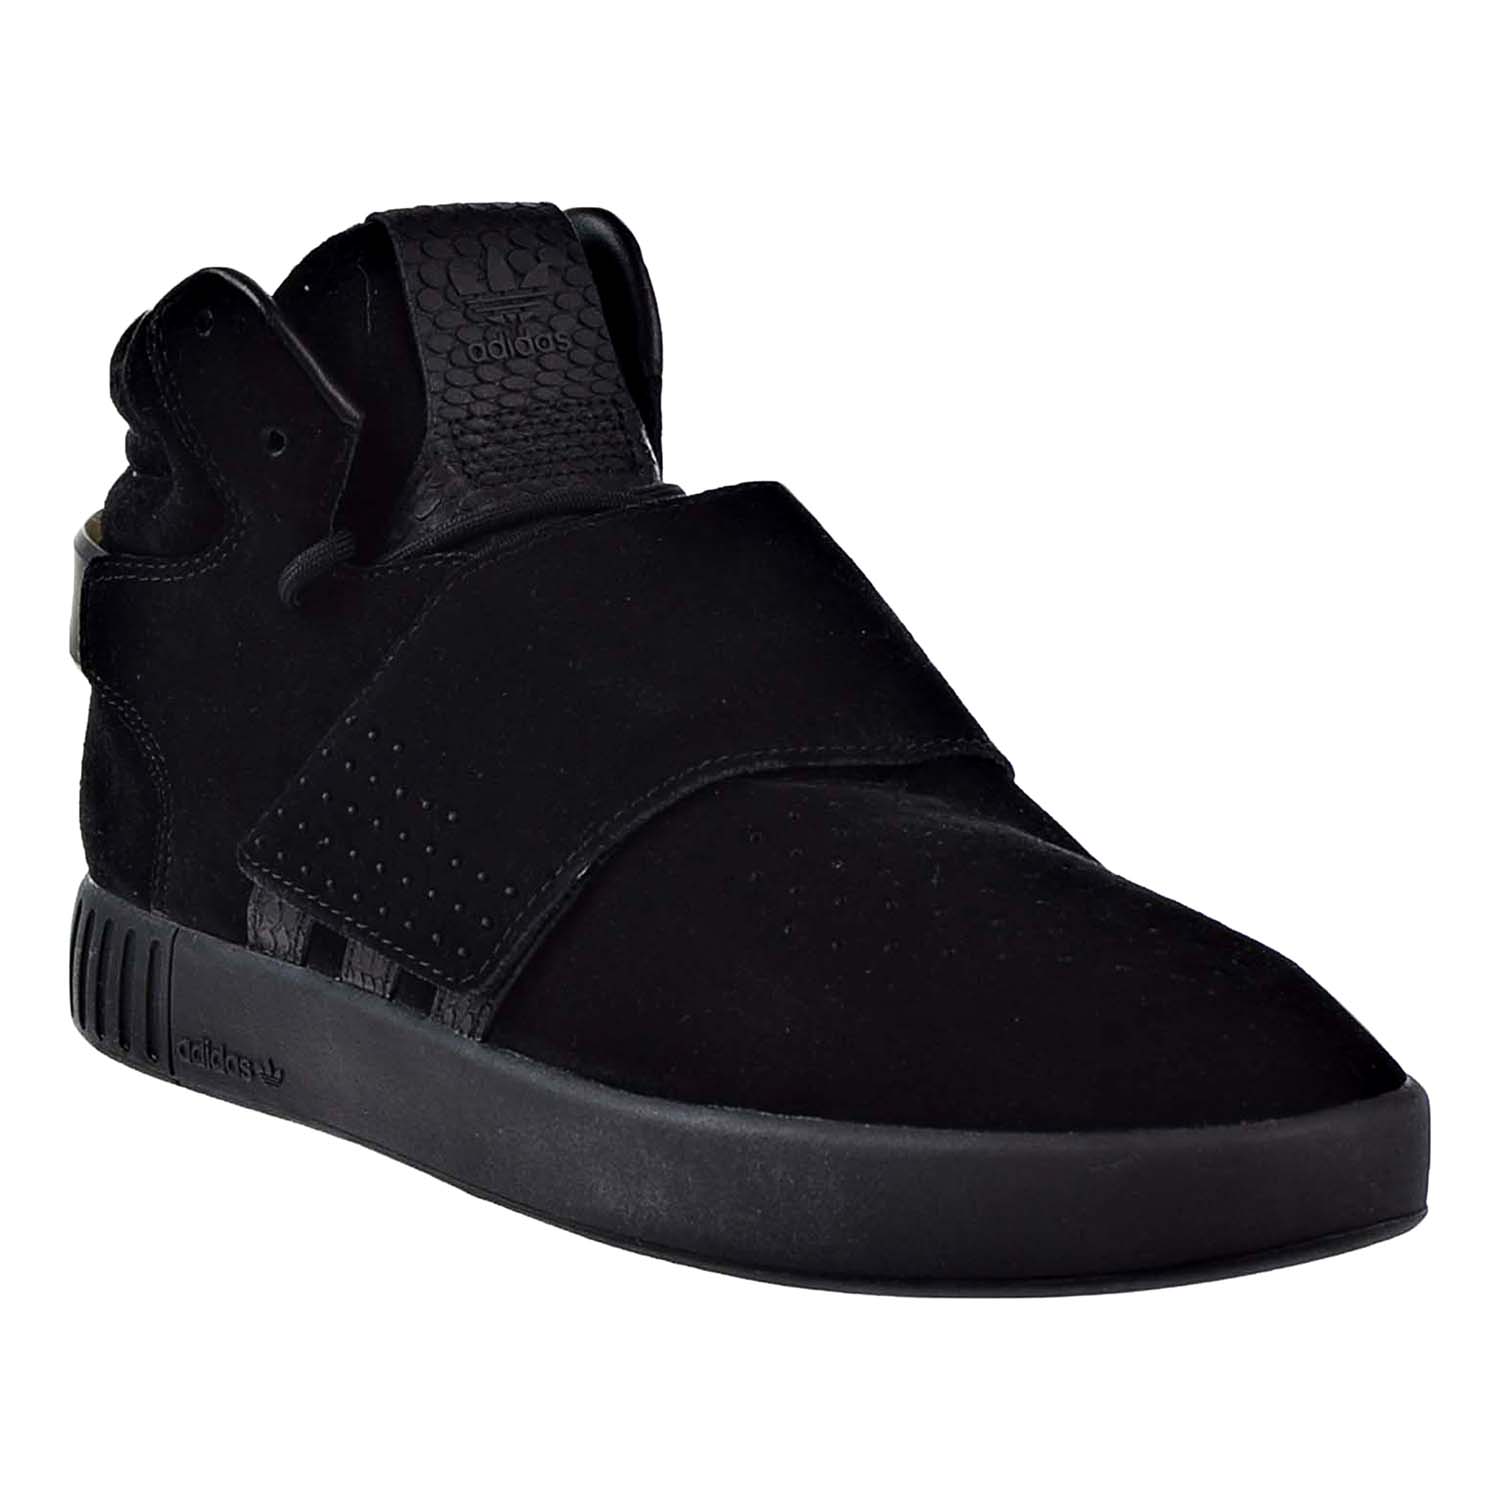 Adidas Originals Tubular Invader Strap Men's Shoes Black-Black BY3632 ...